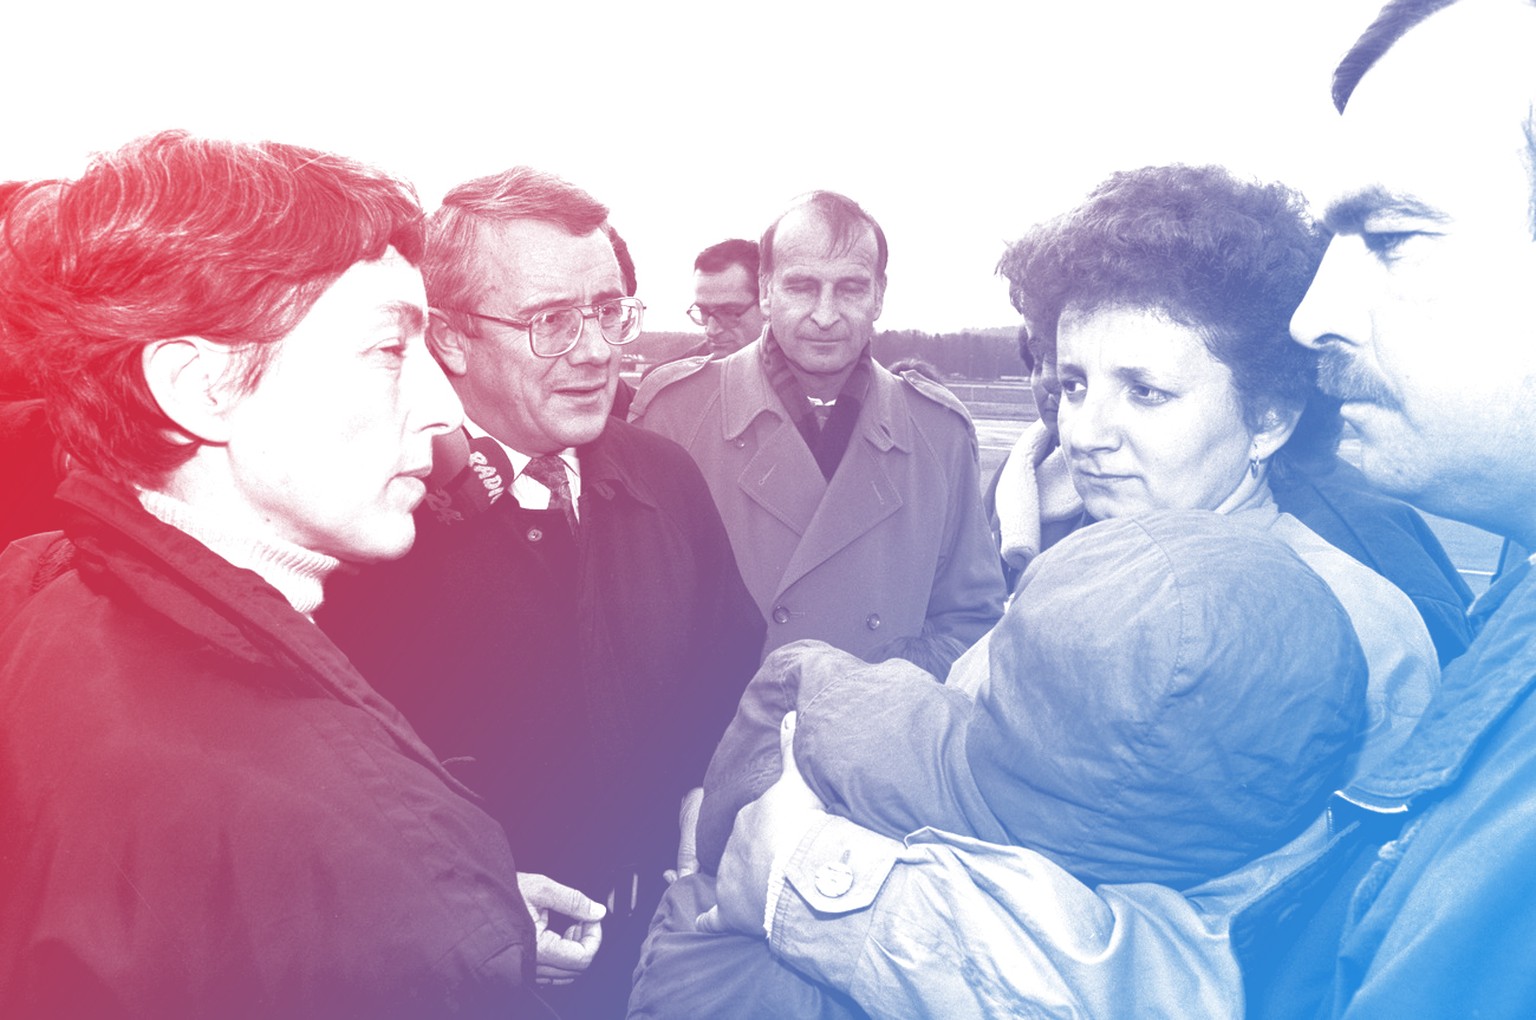 Jugoslawische Kriegsflüchtlinge strömen anfangs der 90er in die Schweiz. Hier CVP-Bundesrat Arnold Koller 1993 (mit Brille) mit bosnischen Kriegsflüchtlingen.